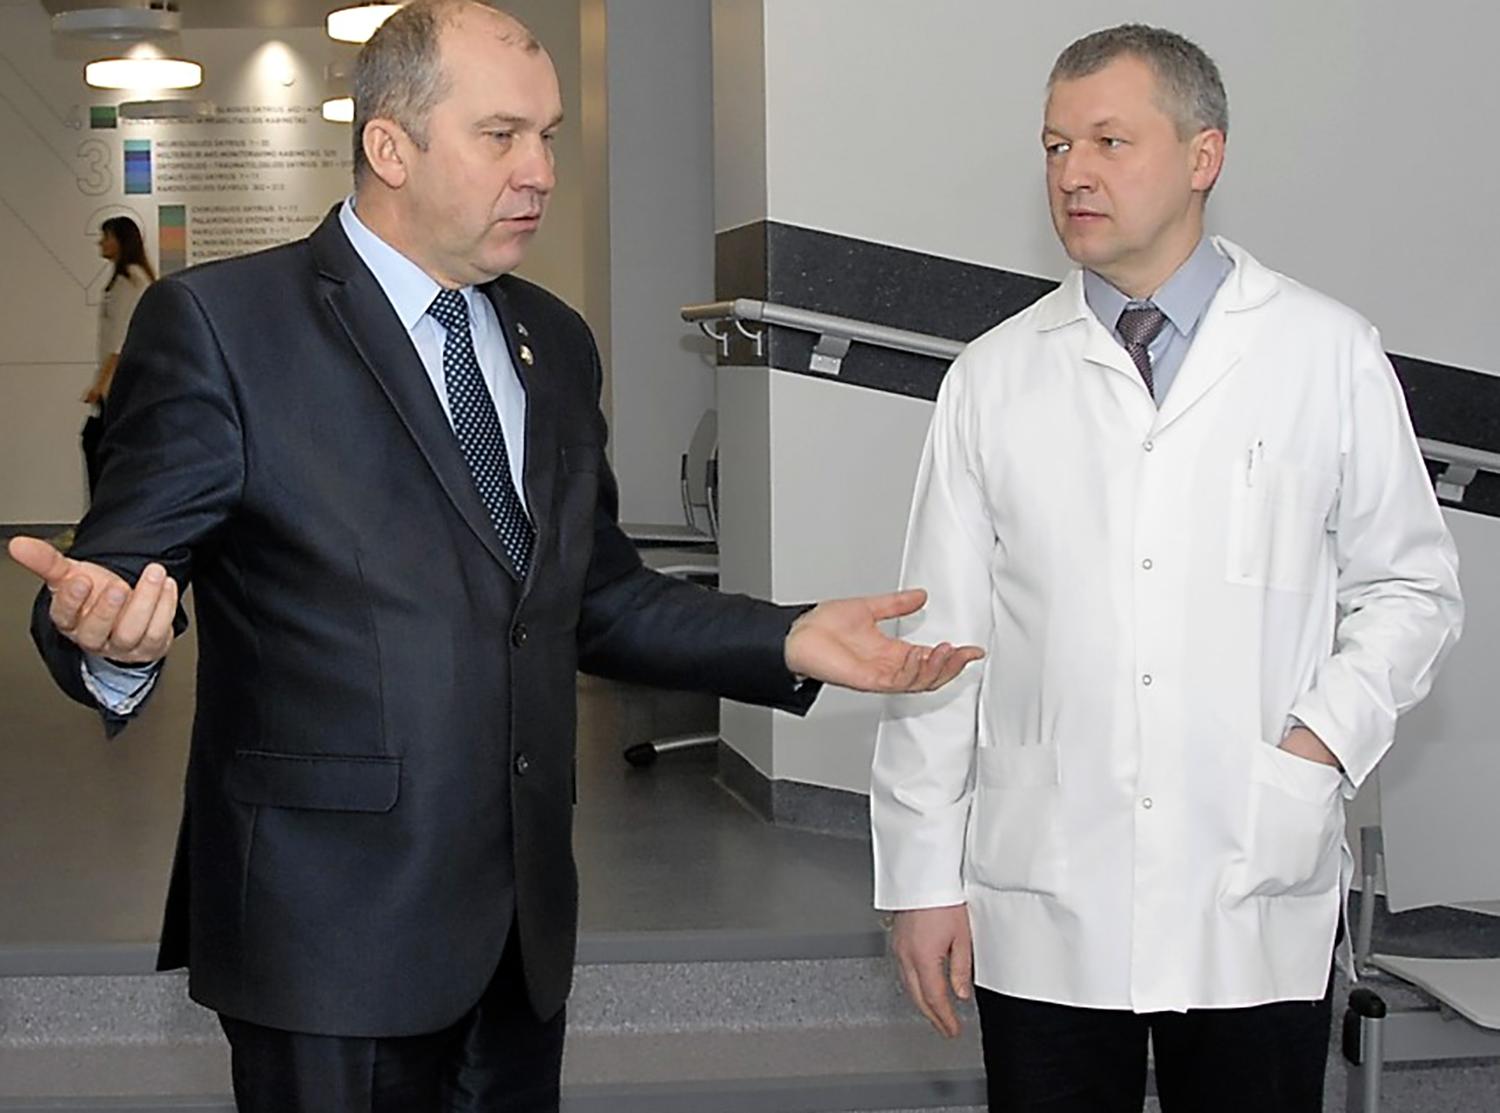 Paskelbė konkursą ligoninės vadovo pareigoms užimti / Rimvydo Civilkos (dešinėje) vadovavimu ligoninei Ukmergės rajono meras R. Janickas patenkintas.